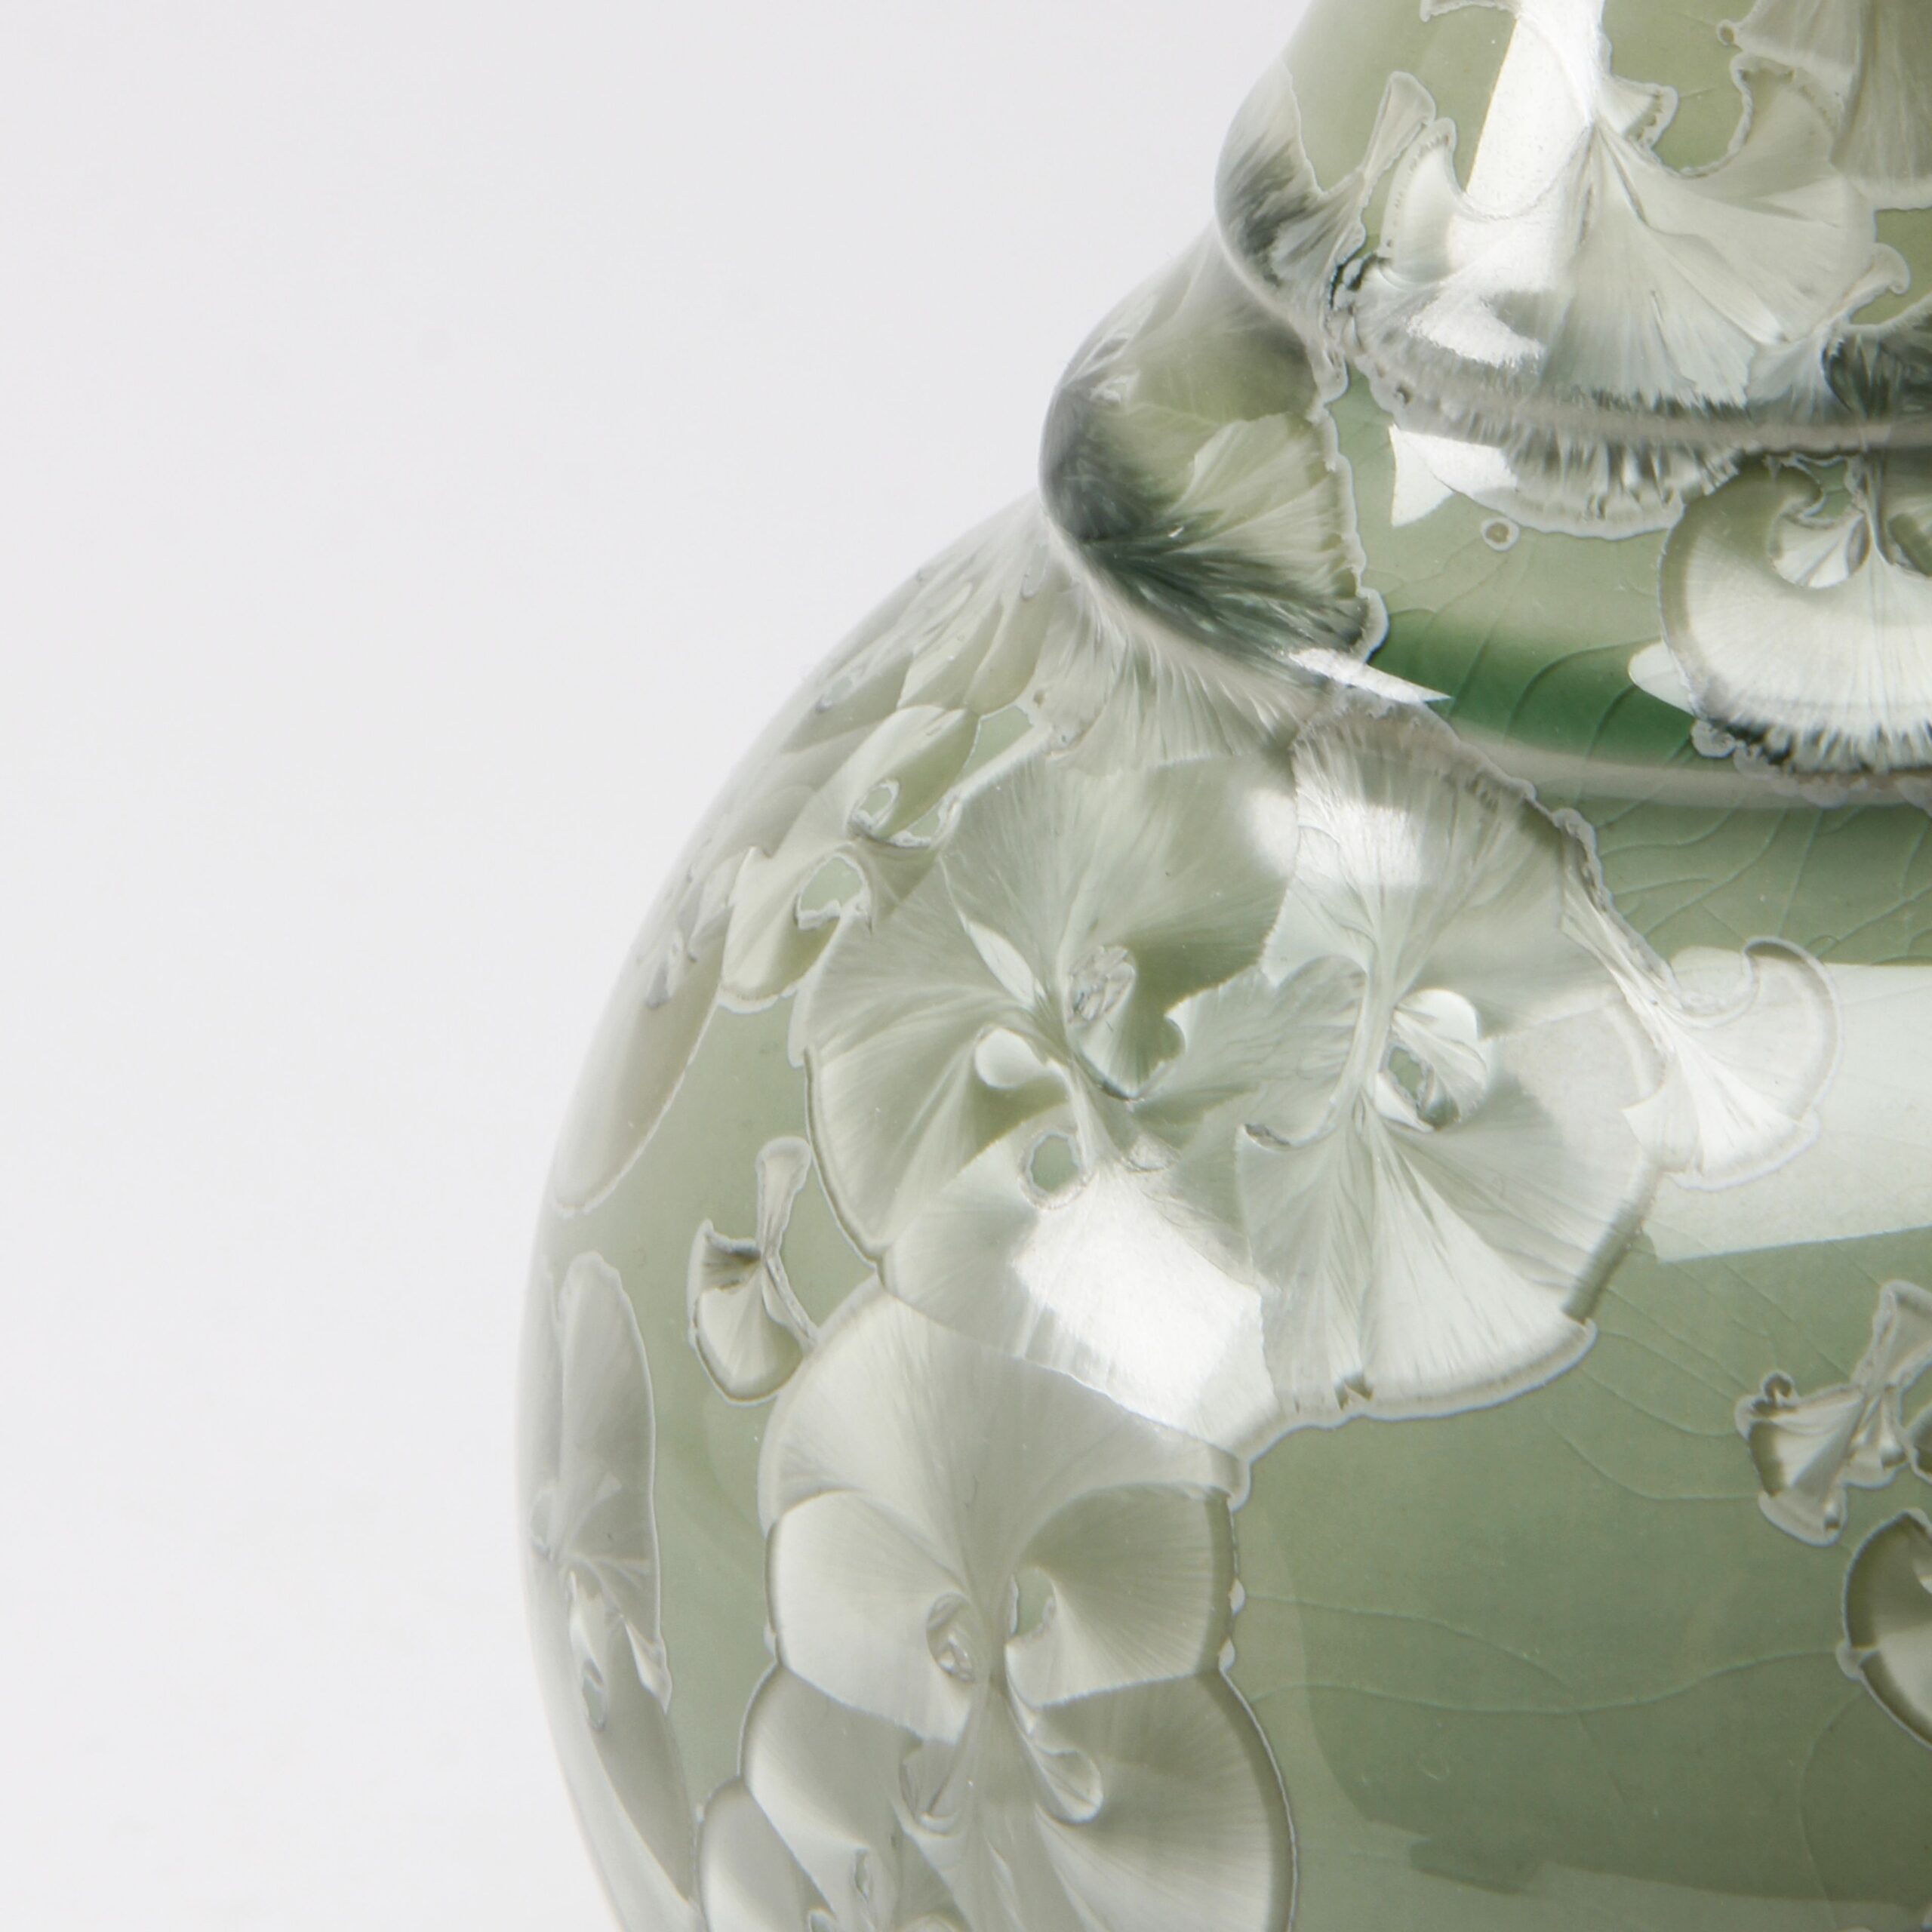 Yumiko Katsuya: Gold on Green Long Neck Vase Product Image 3 of 4